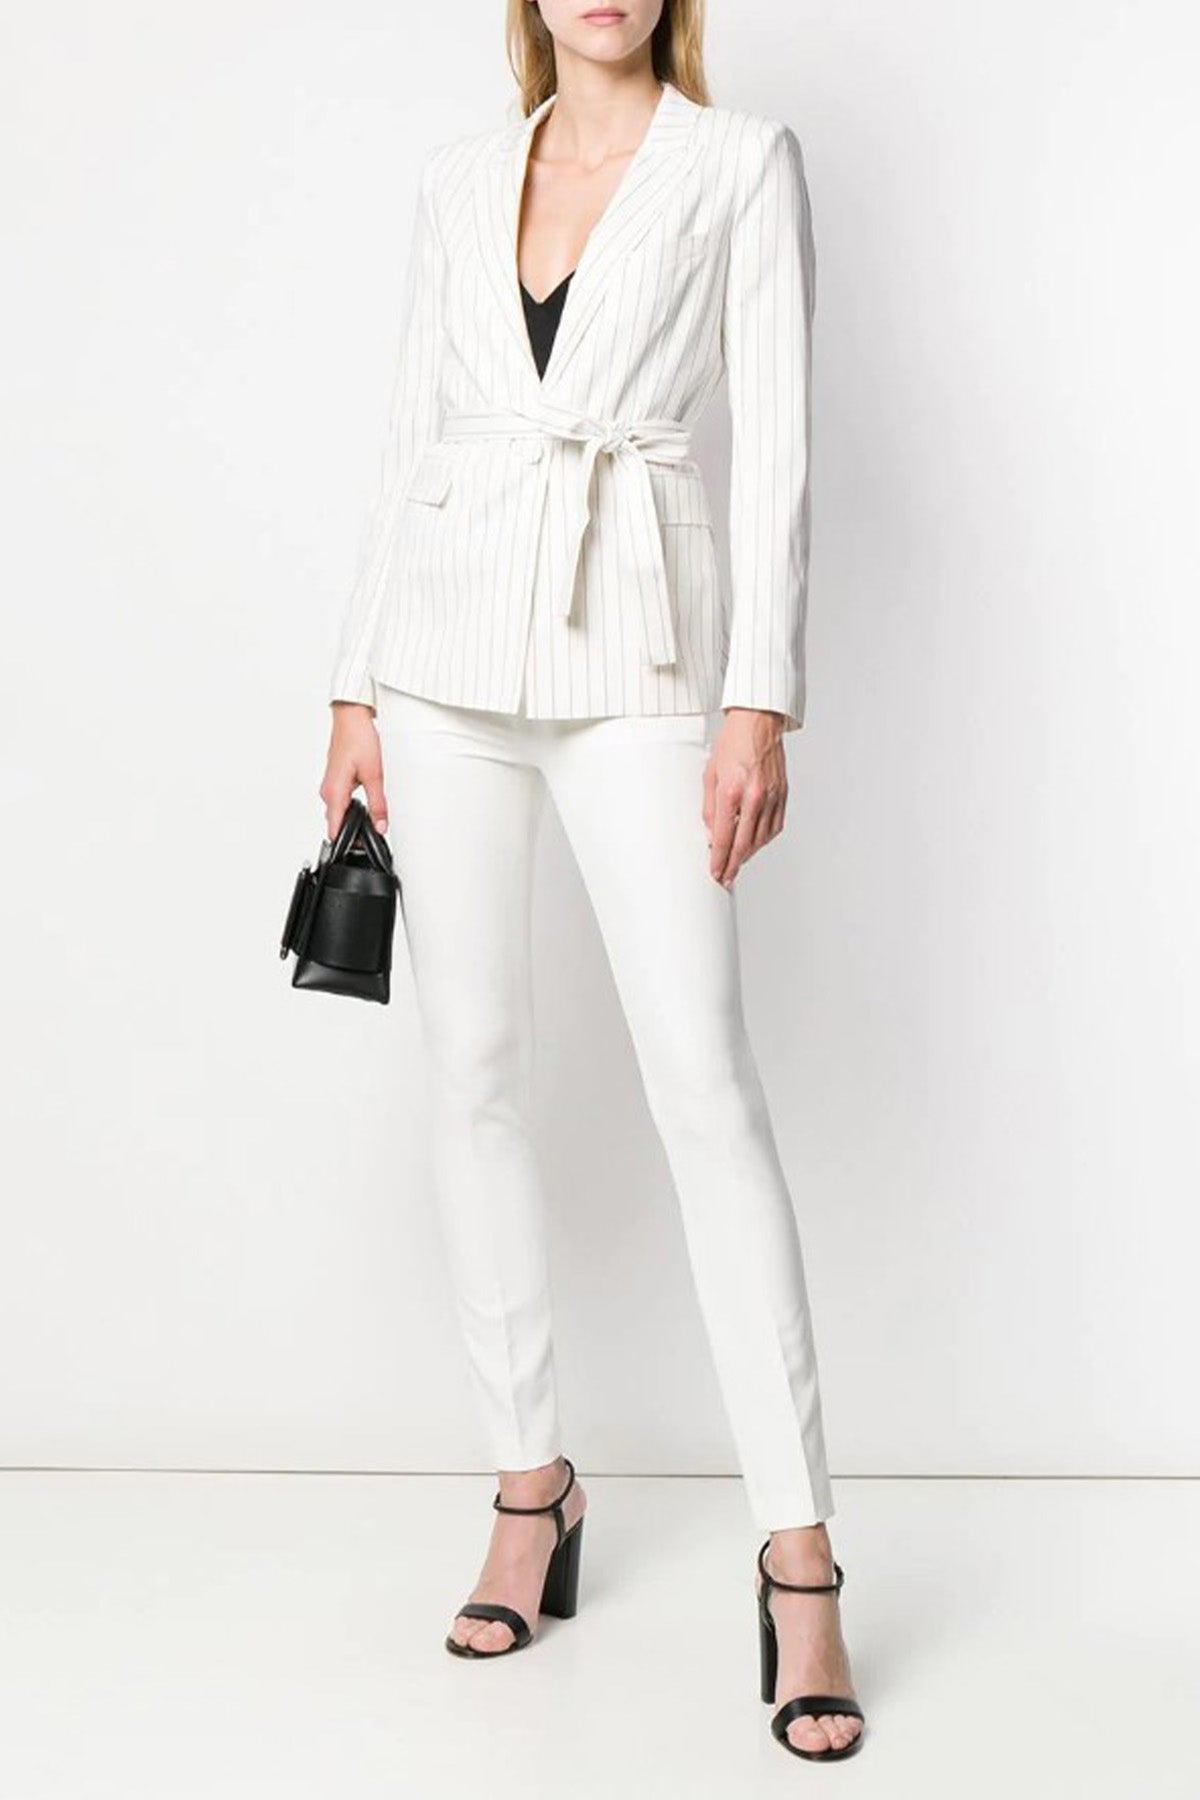 Liu Jo Slim Fit Streç Pantolon-Libas Trendy Fashion Store